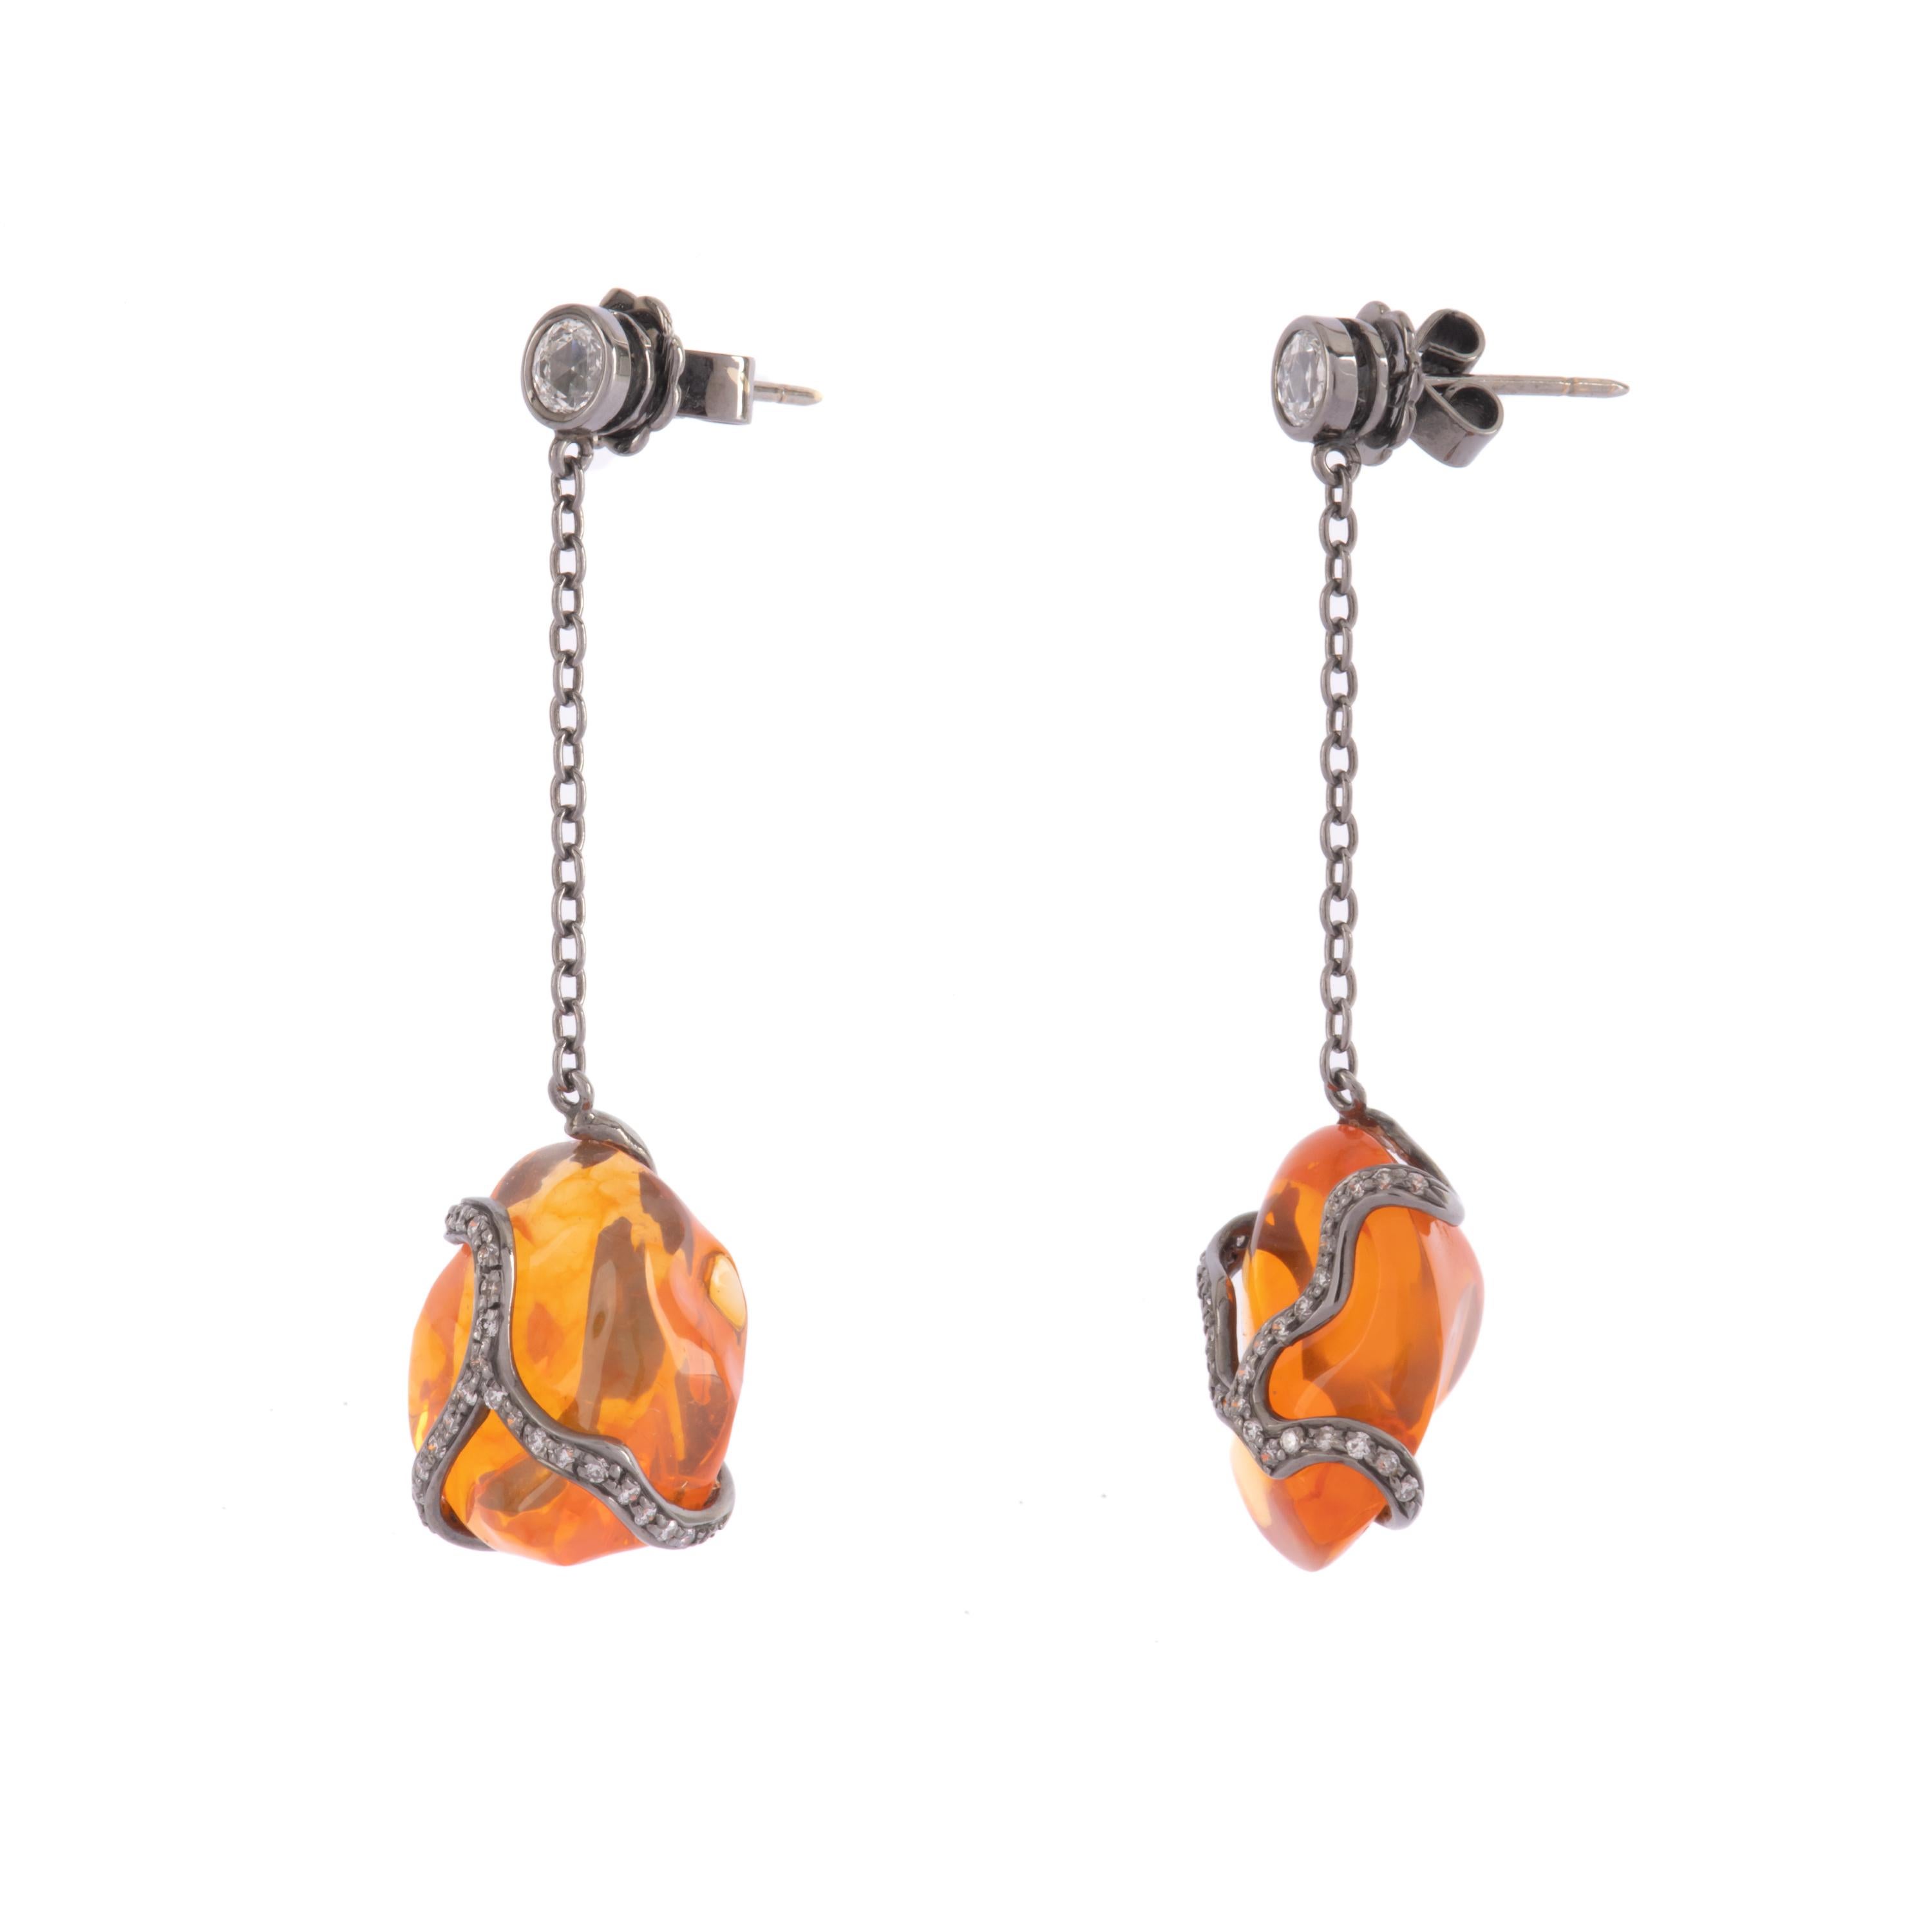 Schwarzgold-Ohrringe mit zwei großen Feueropalen und Diamanten, entworfen von Illario.
Sie sind sowohl für eine sportliche als auch für eine elegante Nacht geeignet.
Feueropal 19,17 ct
Diamanten 0,76 ct